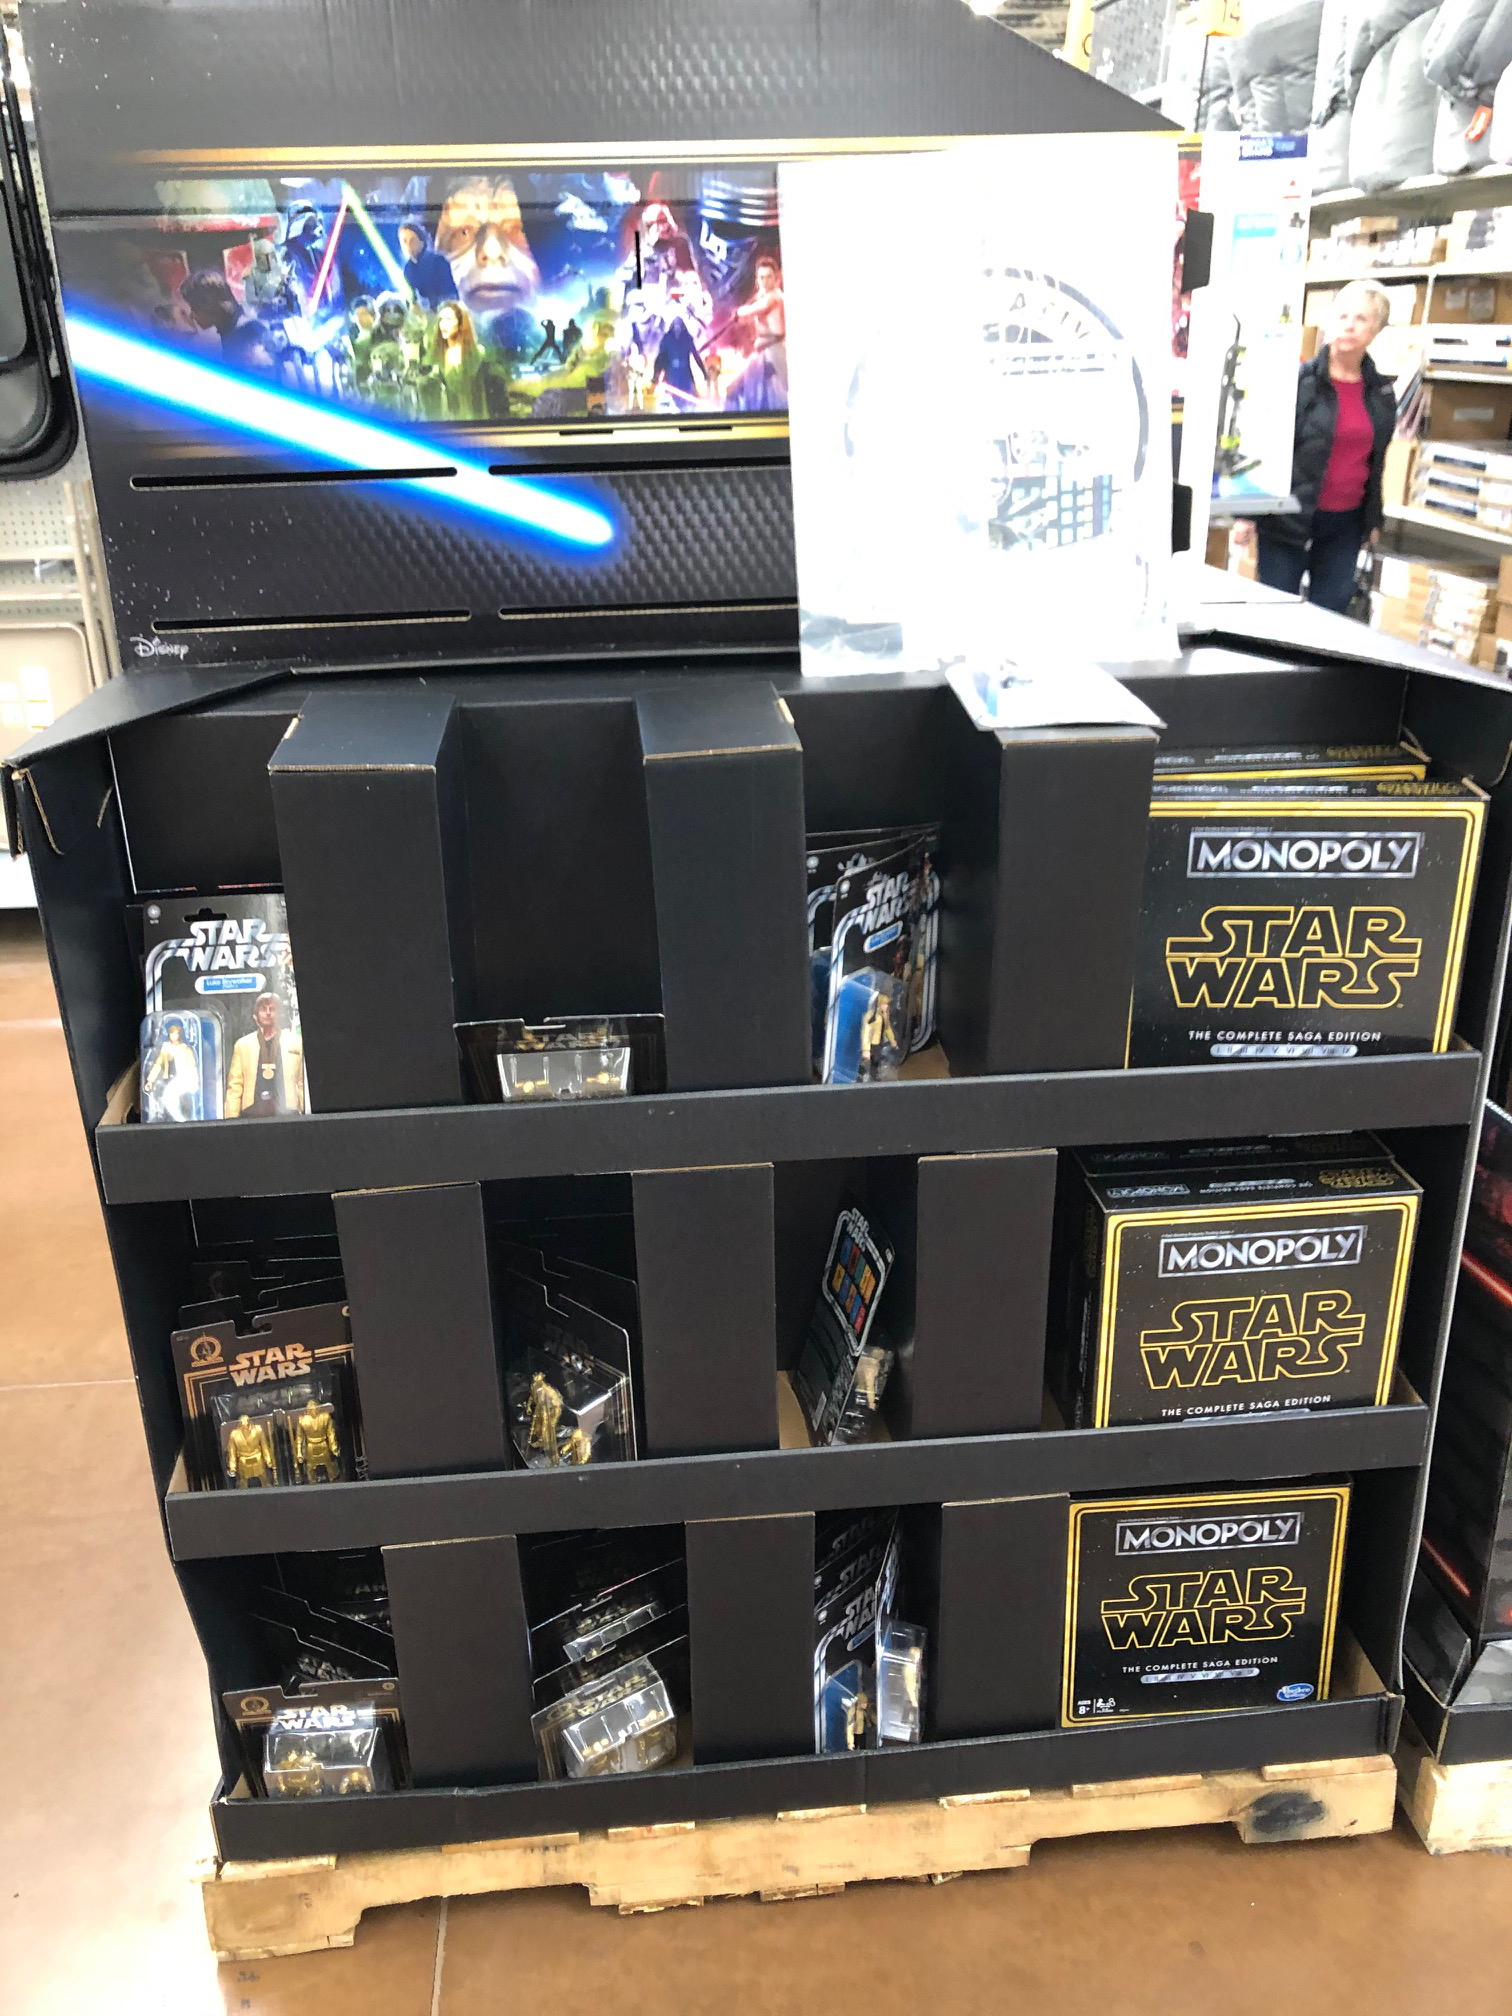 Star Wars @ Walmart Fall 2019